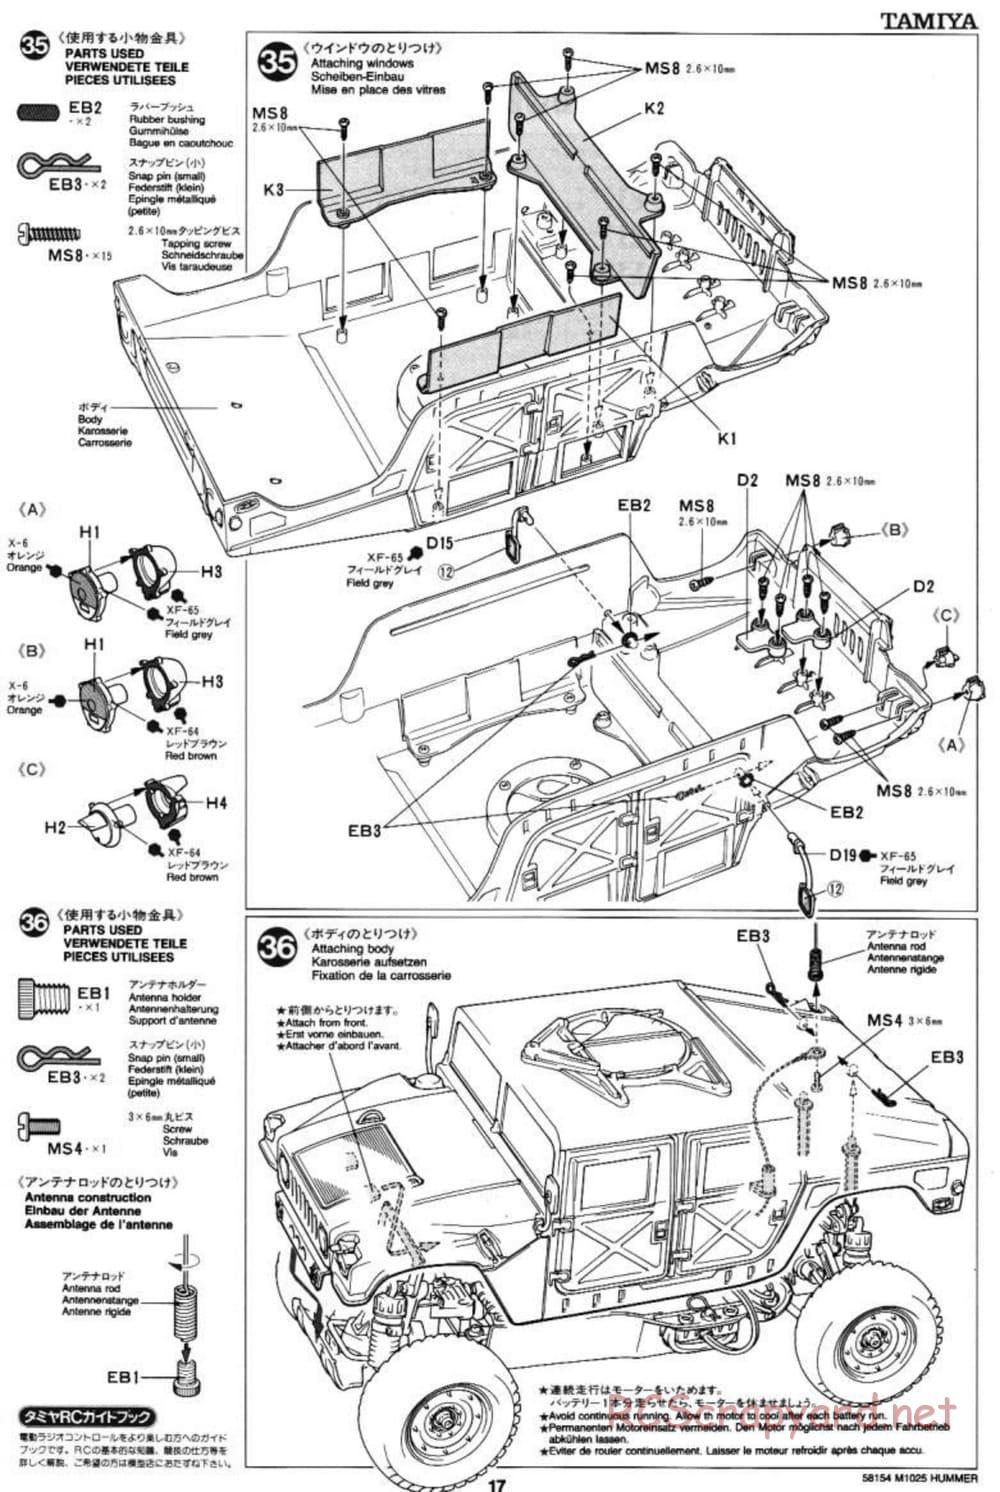 Tamiya - M1025 Hummer - TA-01 Chassis - Manual - Page 17